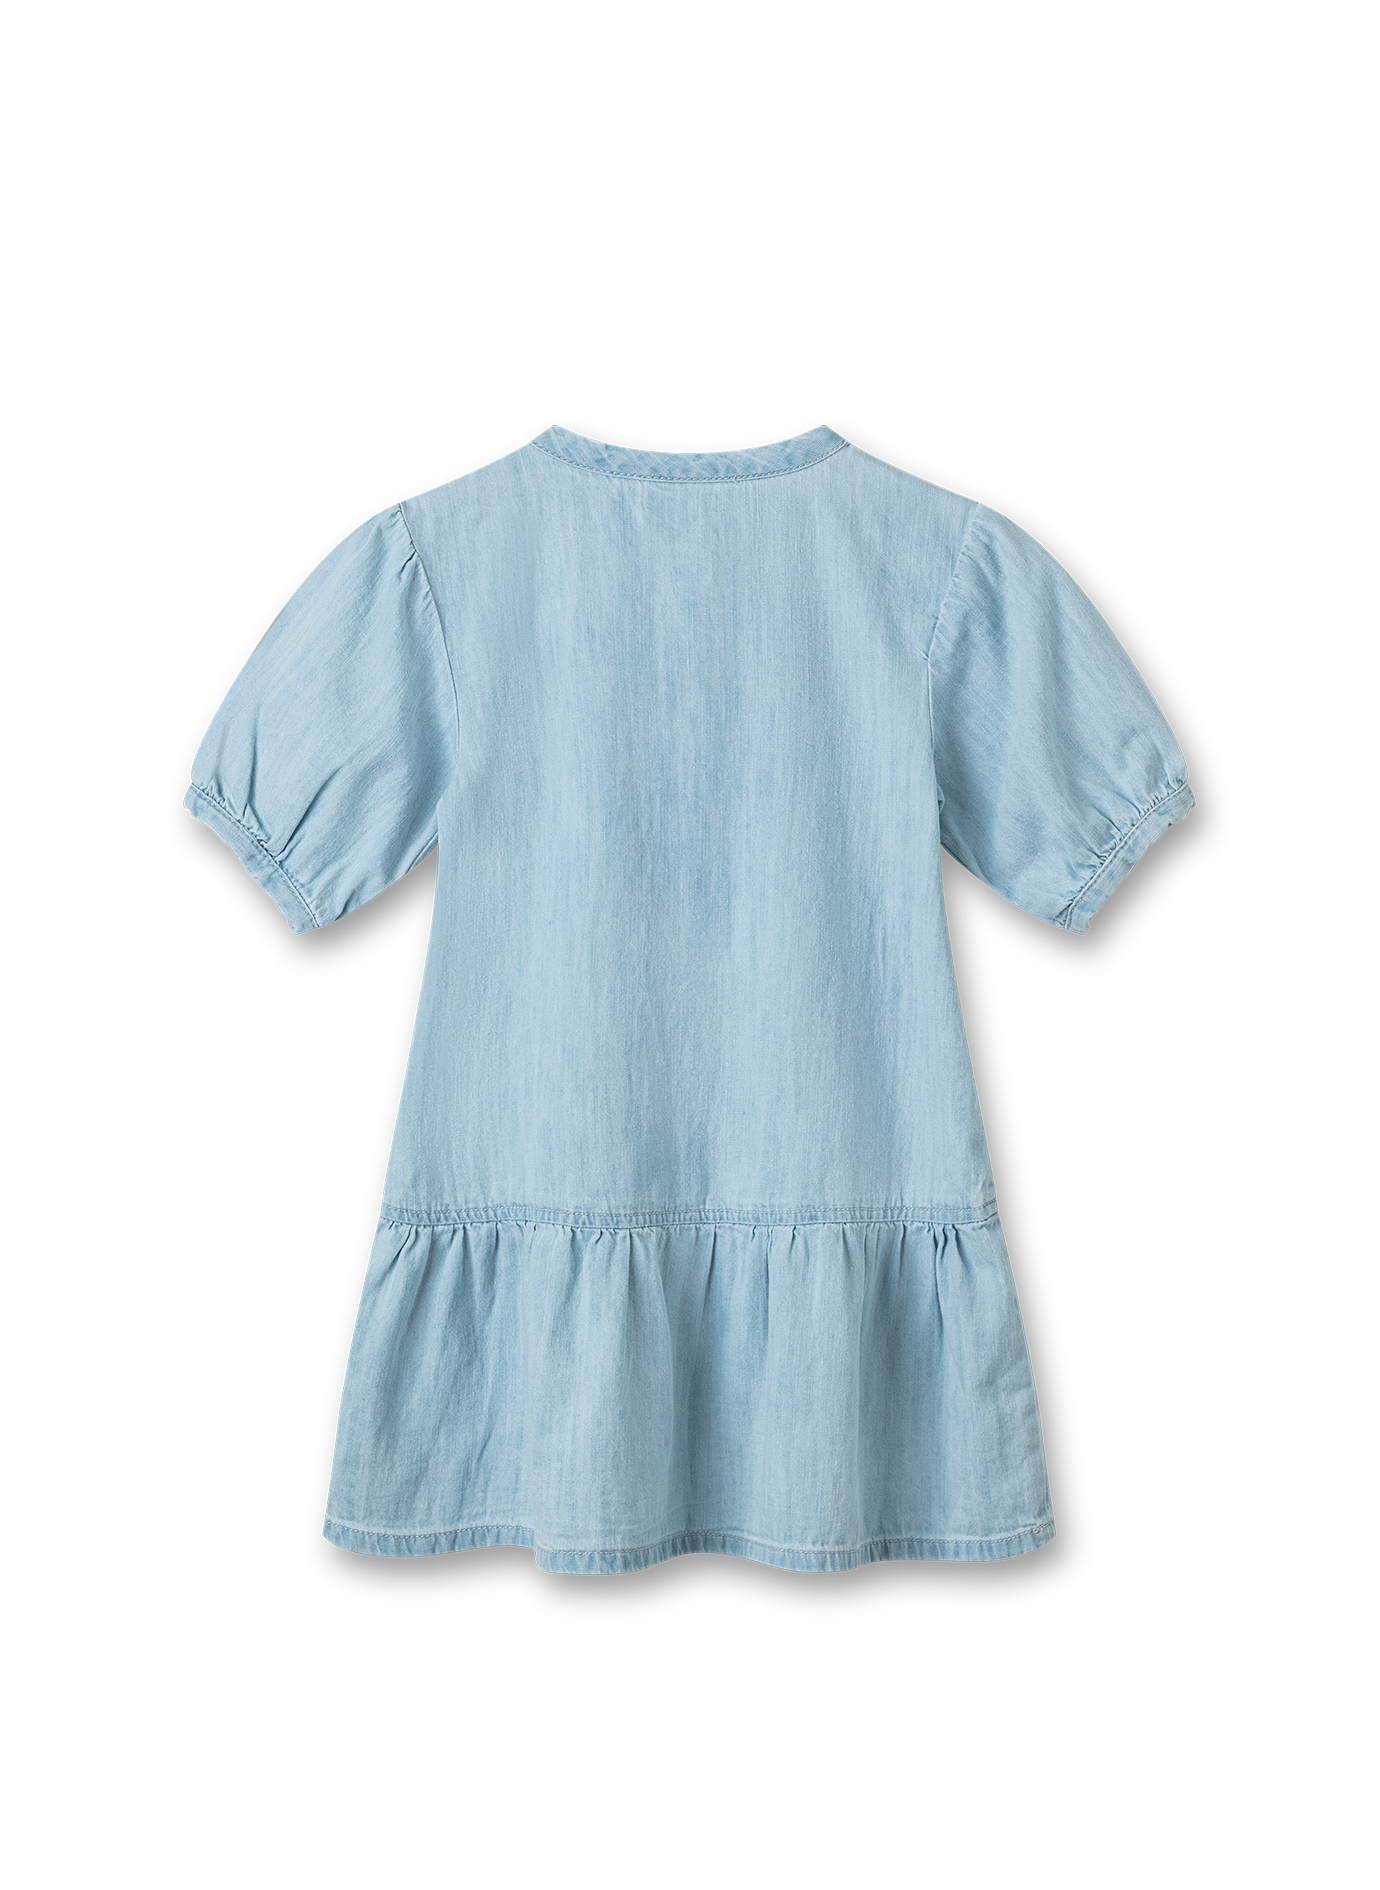 Mädchen-Kleid Denim Blau